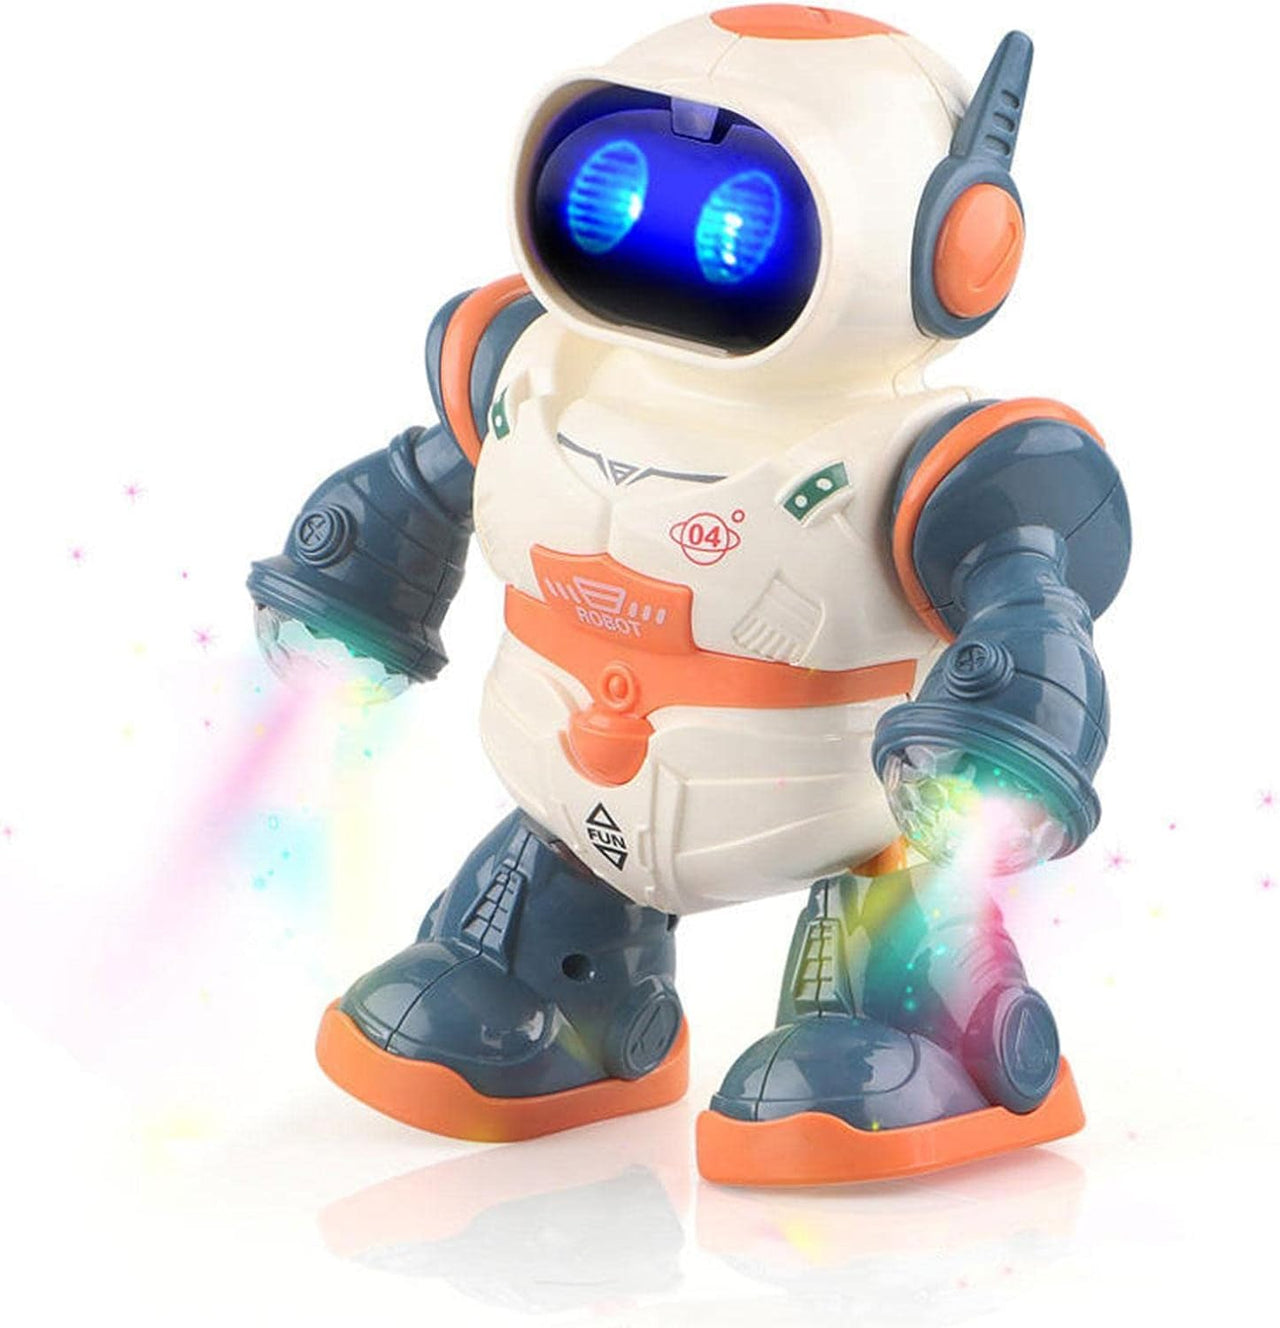 Dancing Intelligent Robot